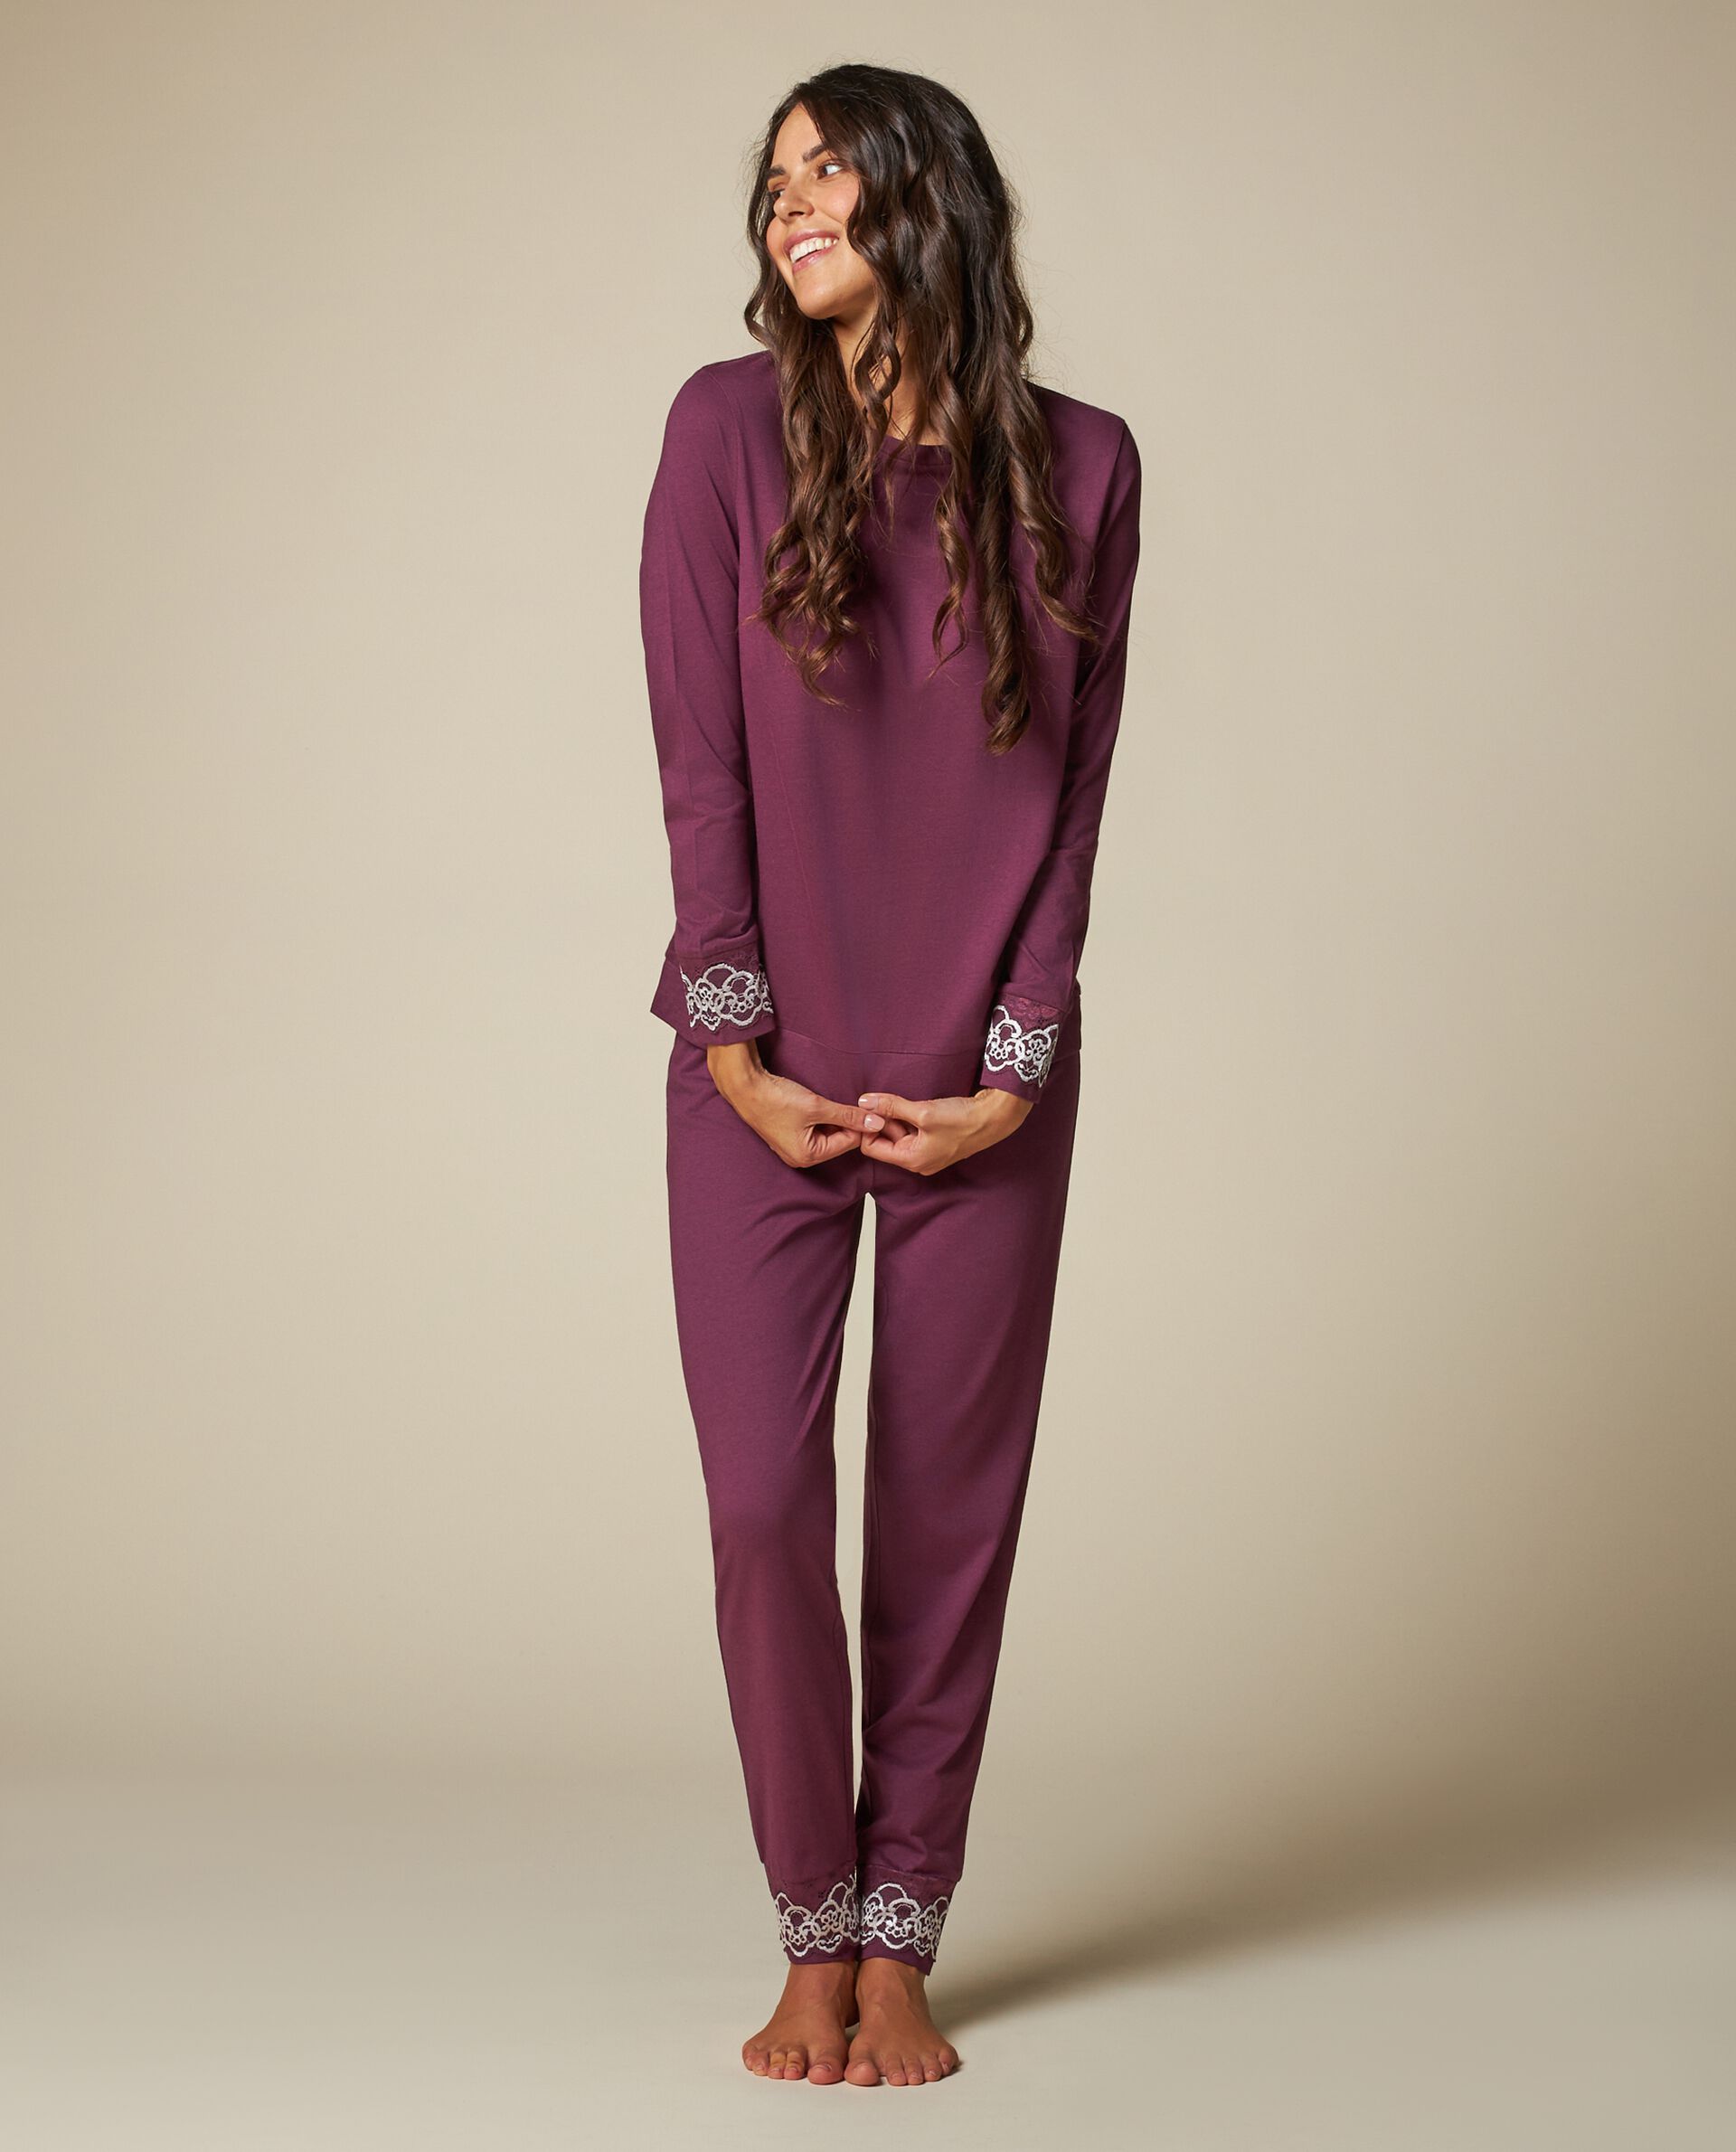 Женские пижамные брюки с вышитой кружевной вставкой Nymos, фиолетовый лиловый цена и фото